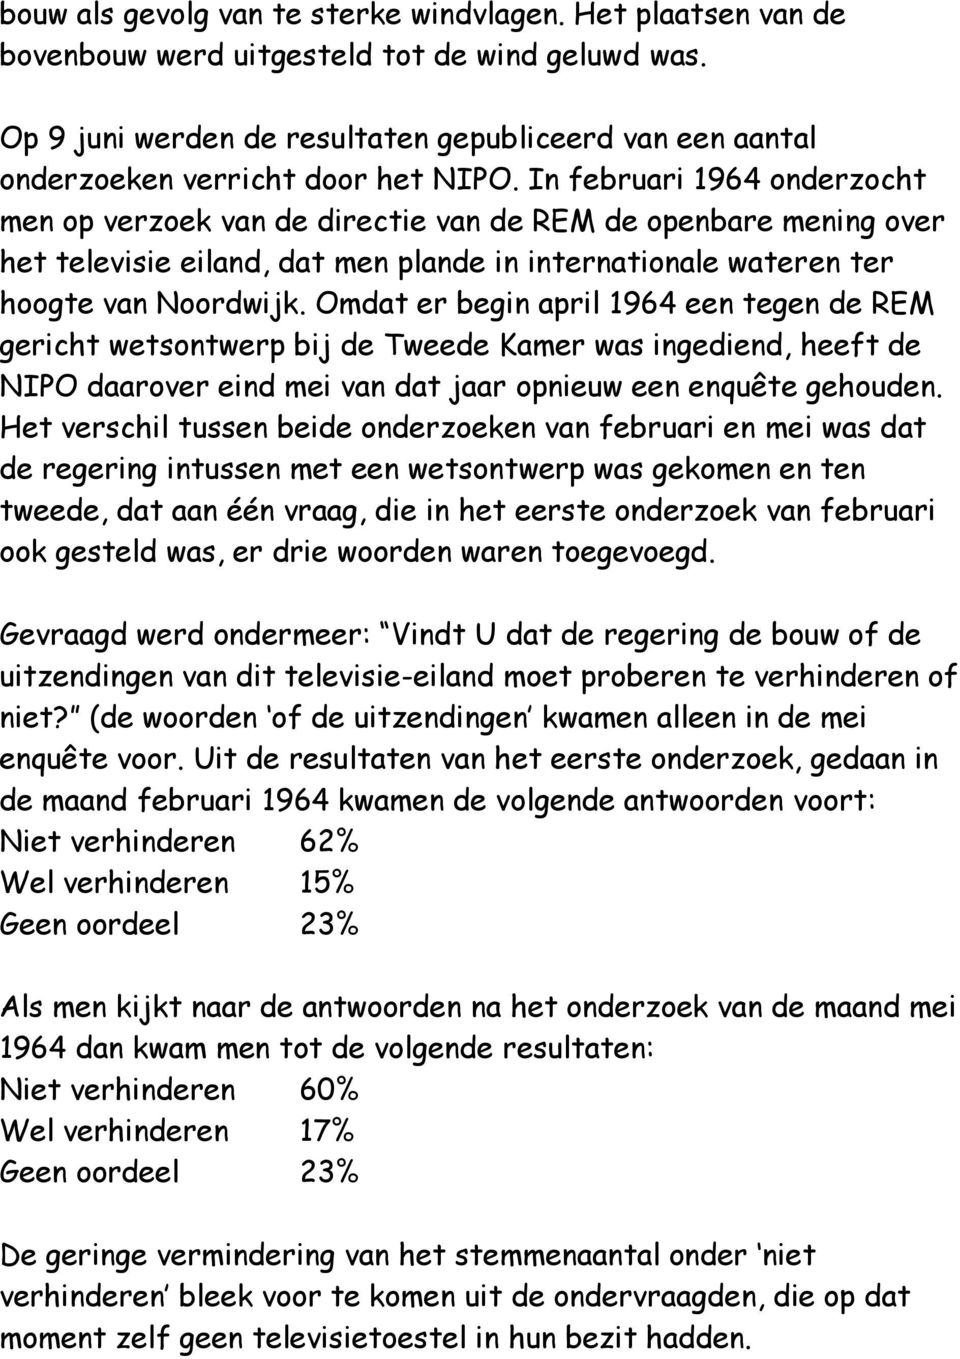 In februari 1964 onderzocht men op verzoek van de directie van de REM de openbare mening over het televisie eiland, dat men plande in internationale wateren ter hoogte van Noordwijk.